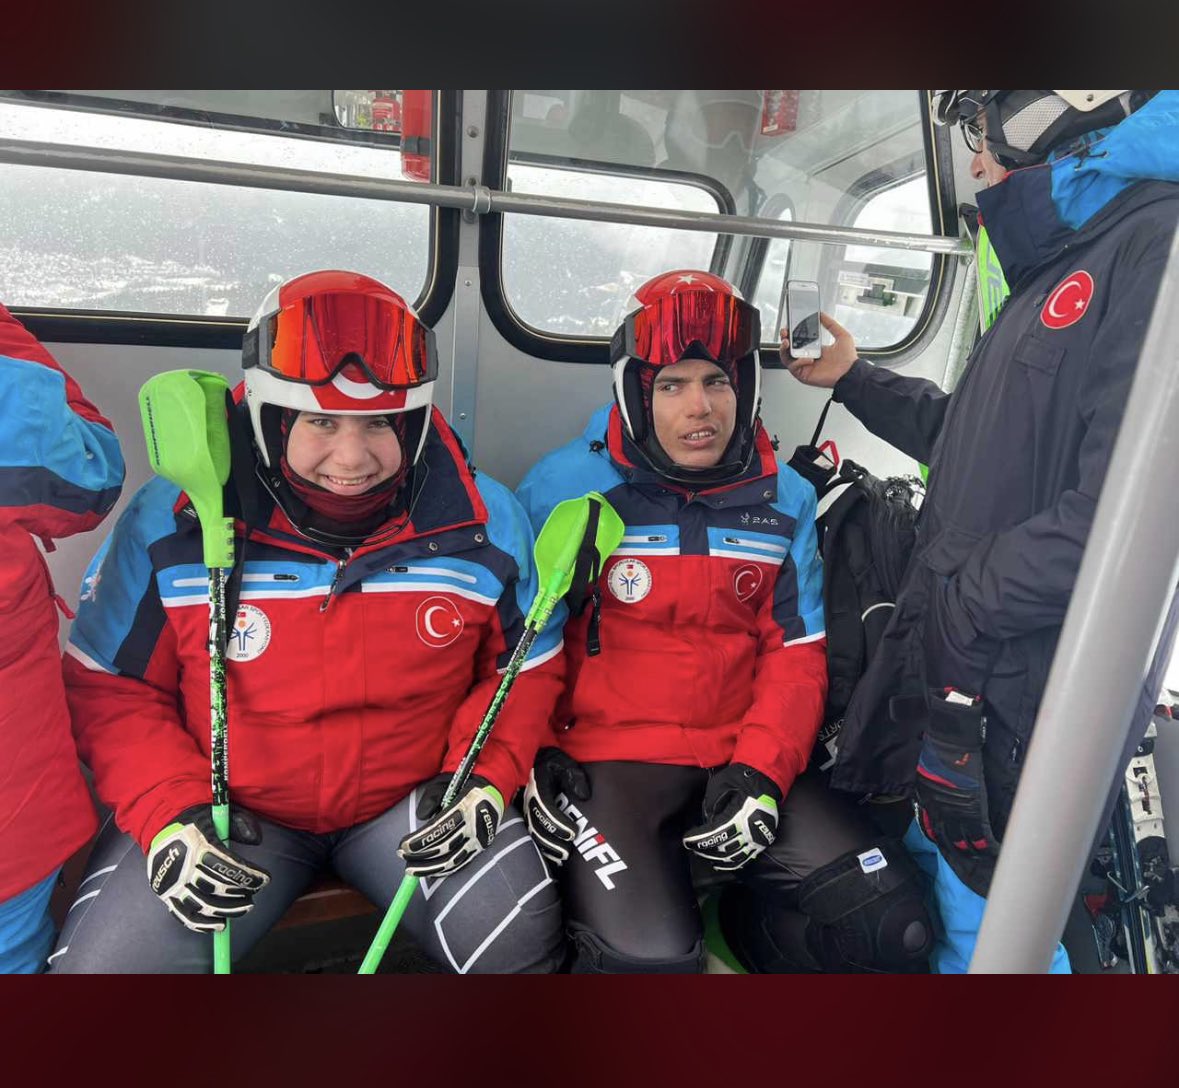 Otizmli milli Kayak sporcularımız Dadaşlar Diyarının gururu olan sporcularımız Aliye Zeynep ve Muhsin Murat Bingül’e Avusturya’da yapılan @SPORTVirtus dünya kayak şampiyonasına büyük haksızlık yapılıyor sesiz kalmayalım bu haksızlığa @Erzurumlular25 @dadaslargrubu #adaletvırtus